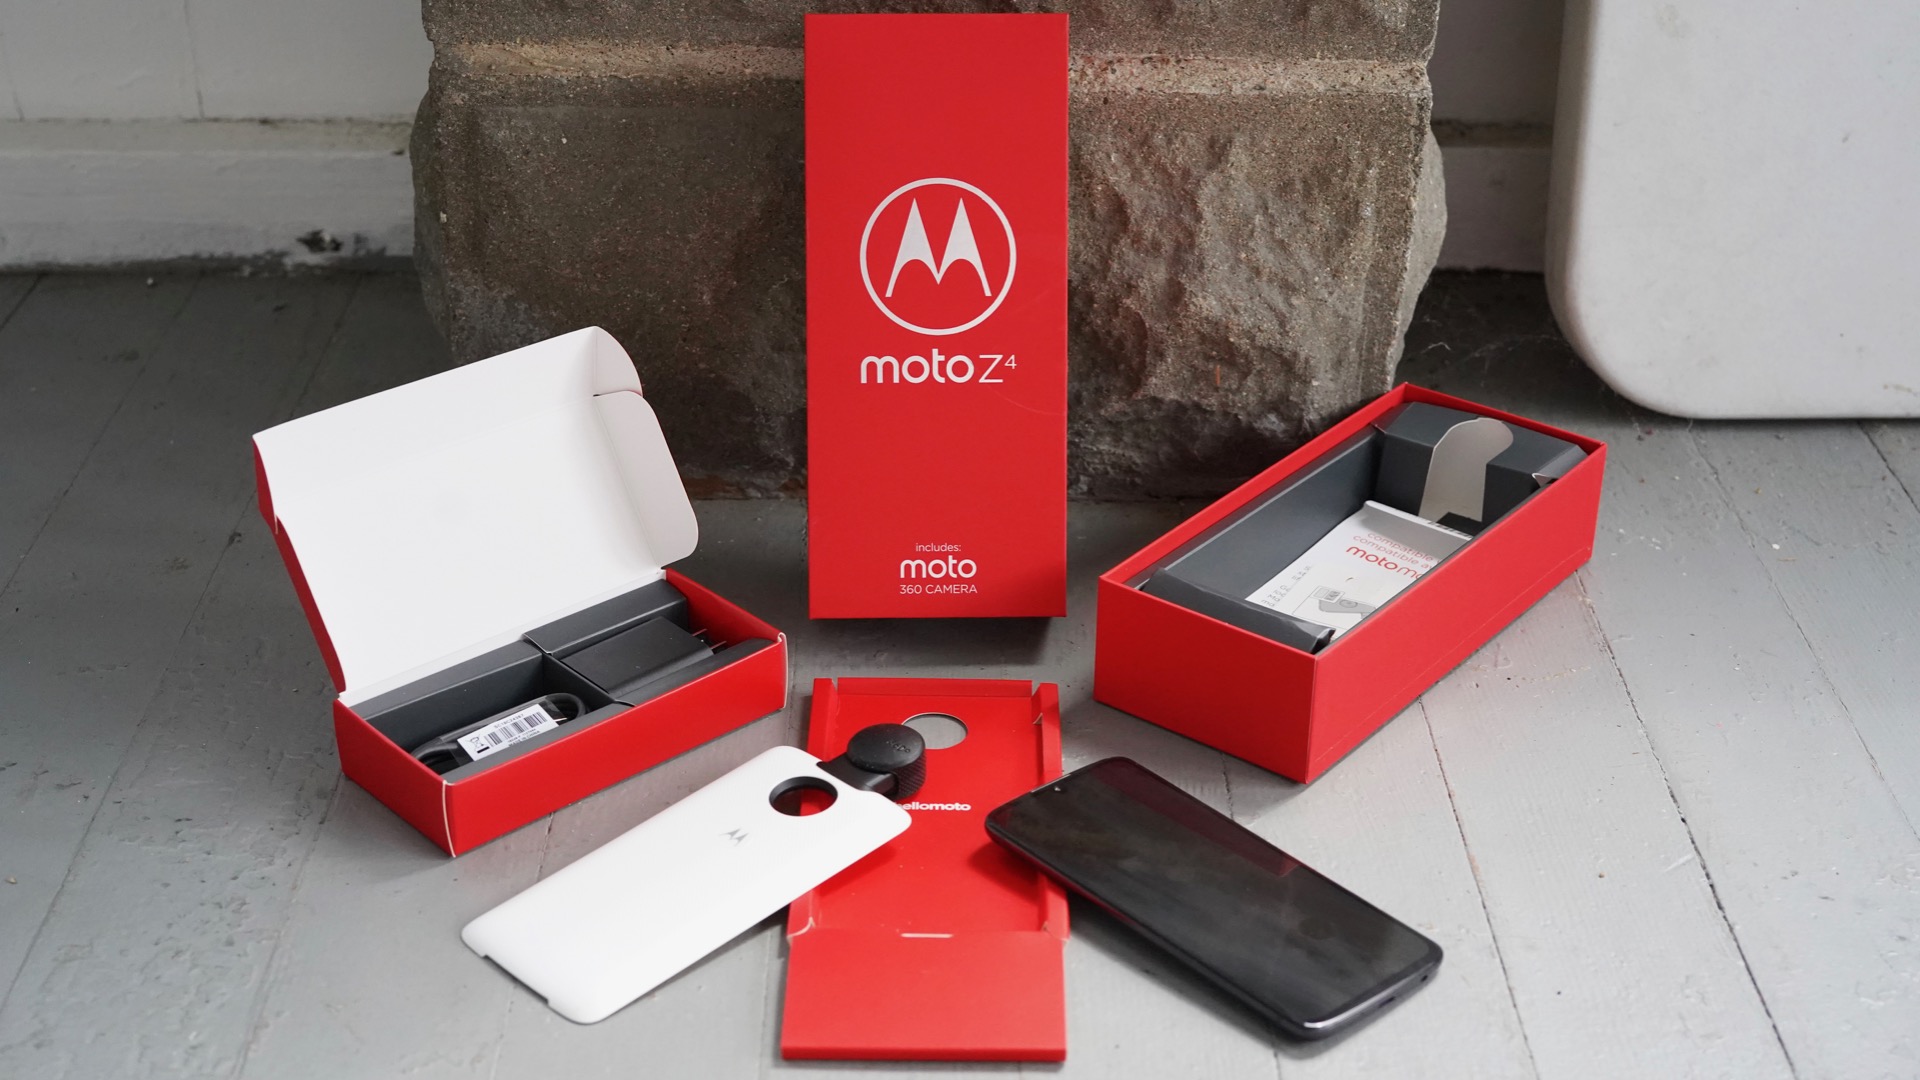 Motorola Moto Z4 Review In the box